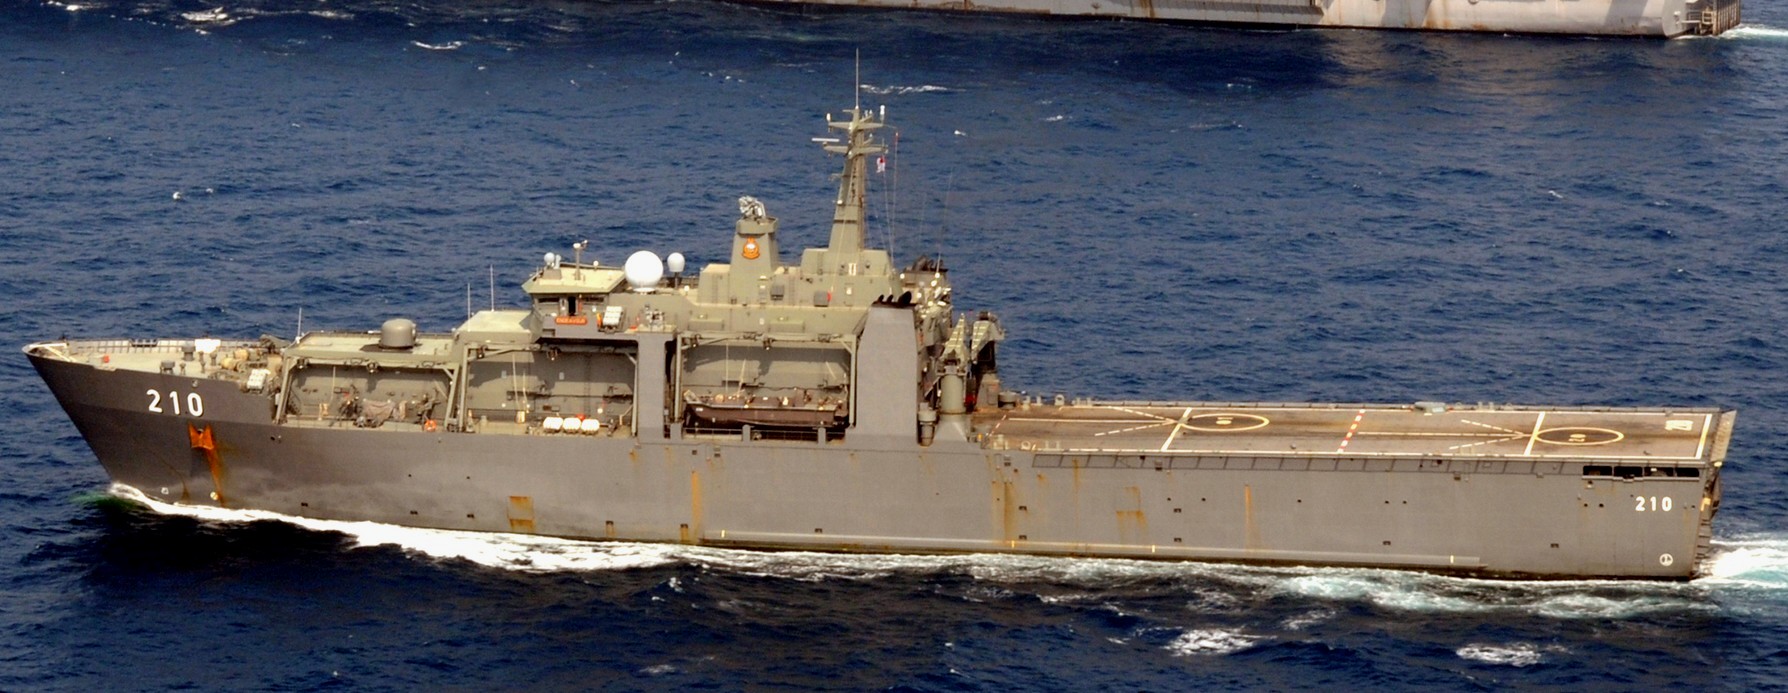 210 rss endeavour endurance class amphibious transport dock landing ship lpd republic singapore navy 03